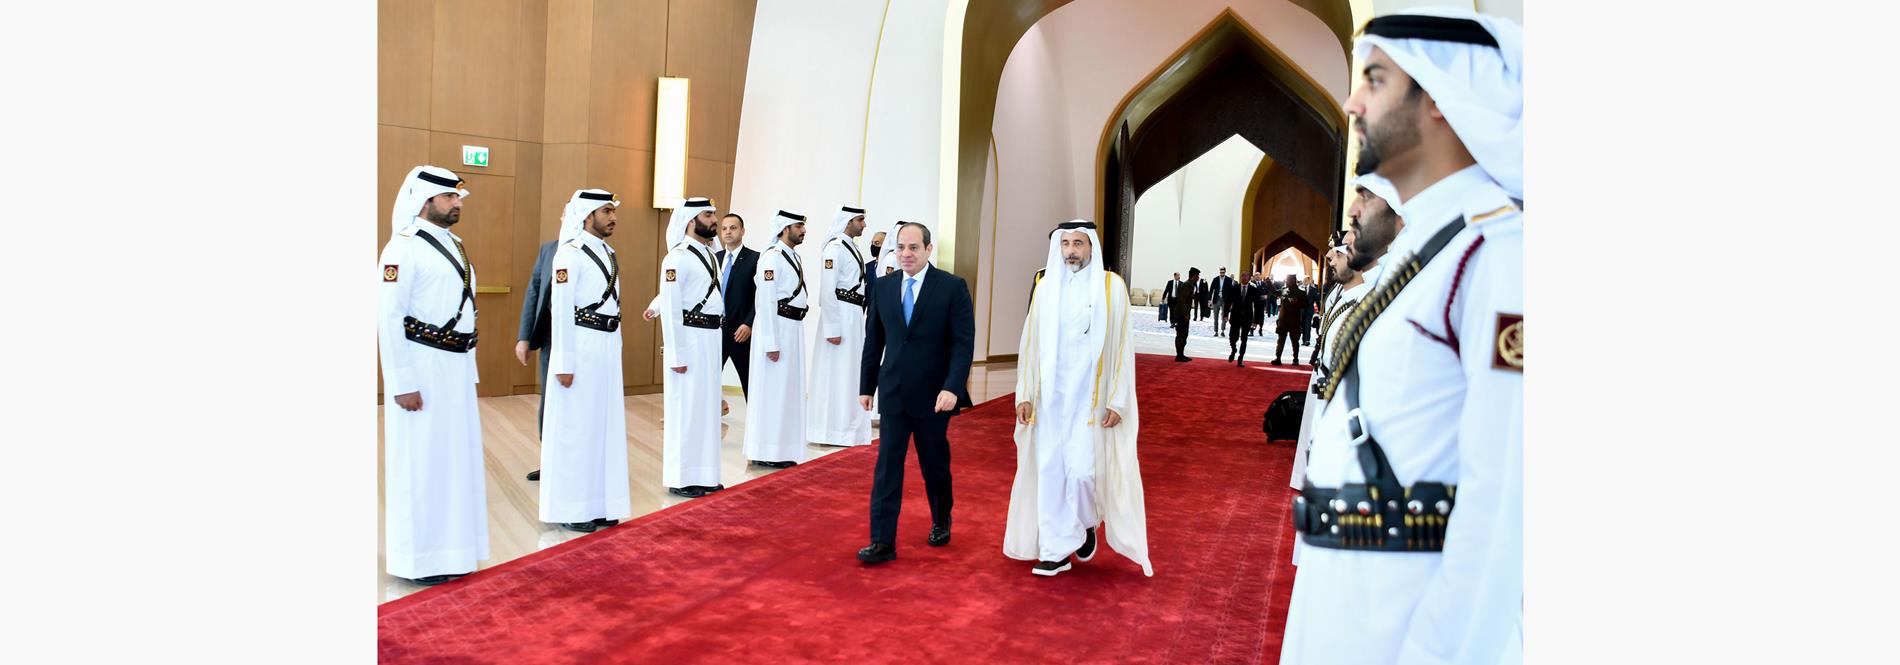 الرئيس عبد الفتاح السيسي يغادر العاصمة القطرية عقب المشاركة في فعاليات افتتاح كأس العالم لكرة القدم  21/11/2022